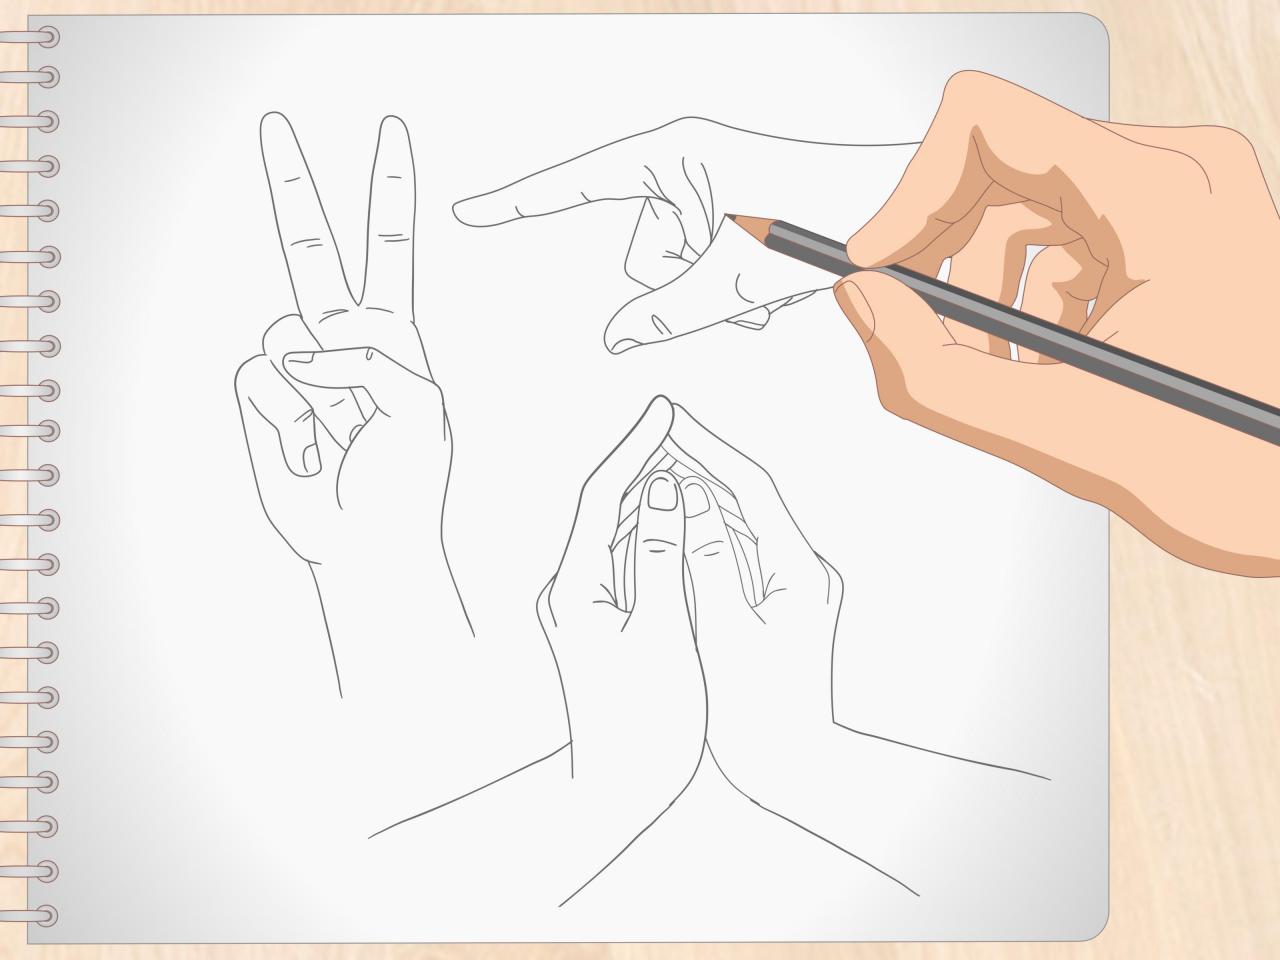 Cómo dibujar manos de ánime: 12 Pasos (con imágenes), dibujos de Manos Animé, como dibujar Manos Animé paso a paso